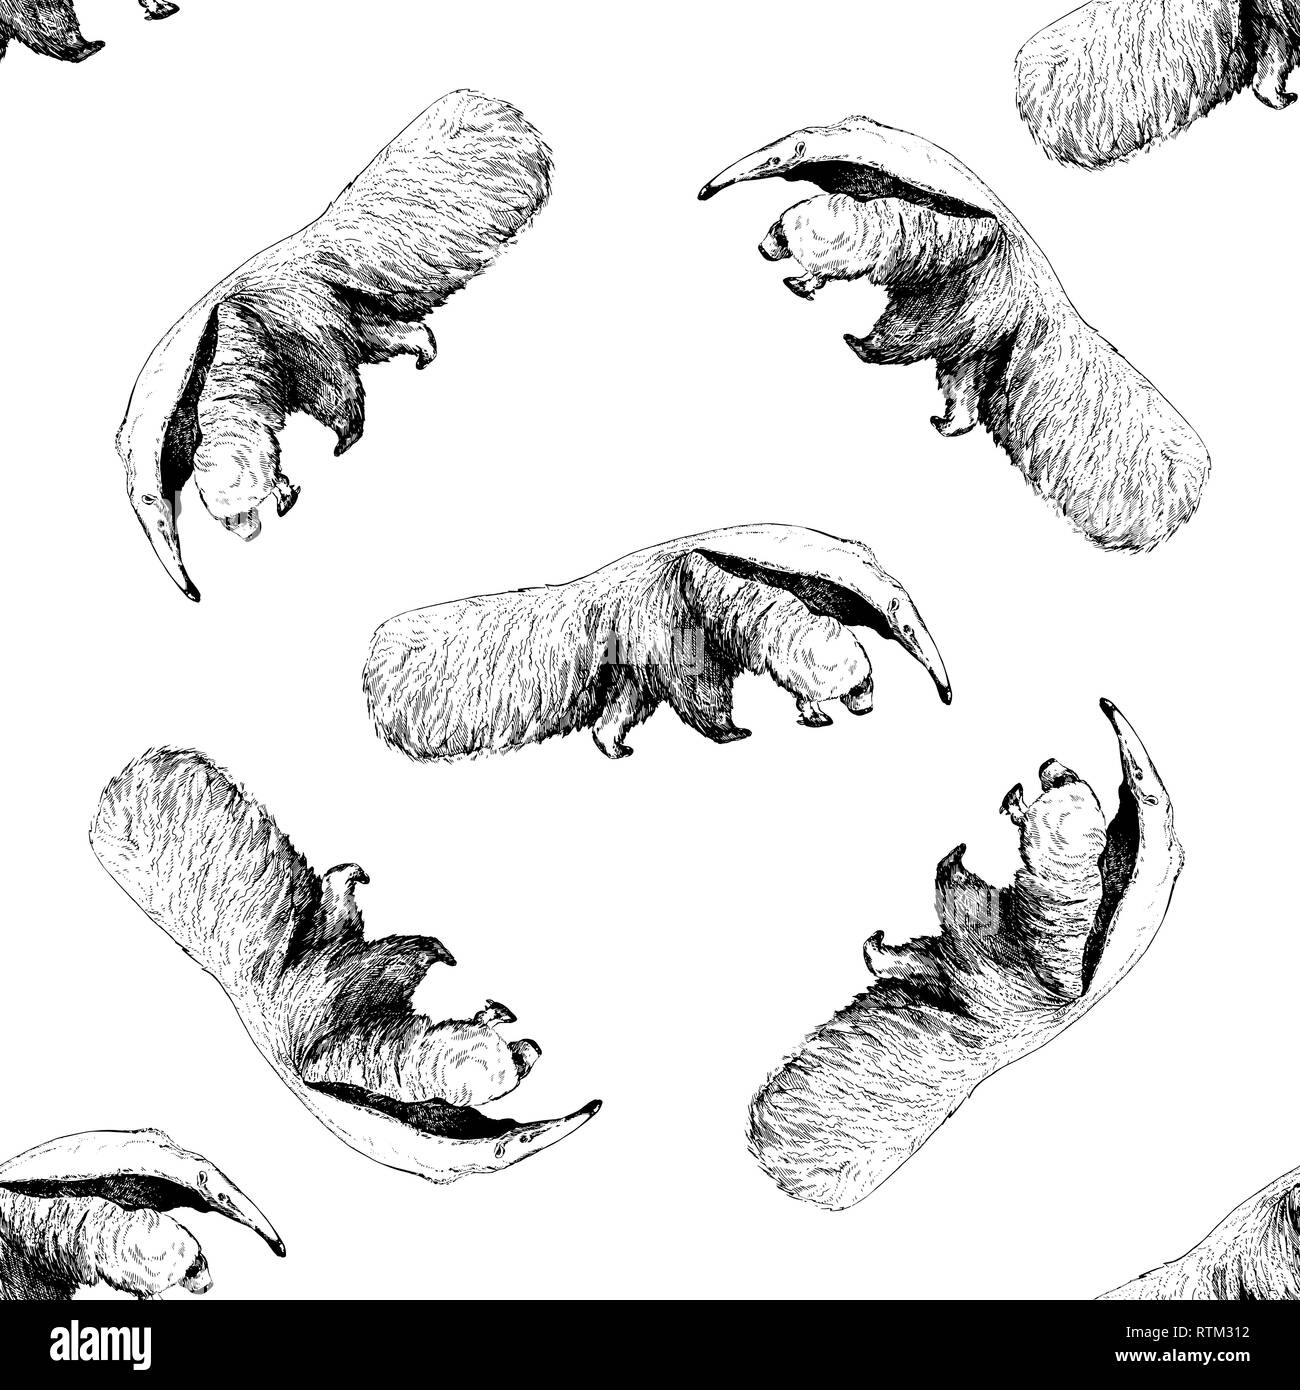 Nahtlose Muster von Hand gezeichnete Skizze stil Großen Ameisenbären auf weißem Hintergrund. Vector Illustration. Stock Vektor